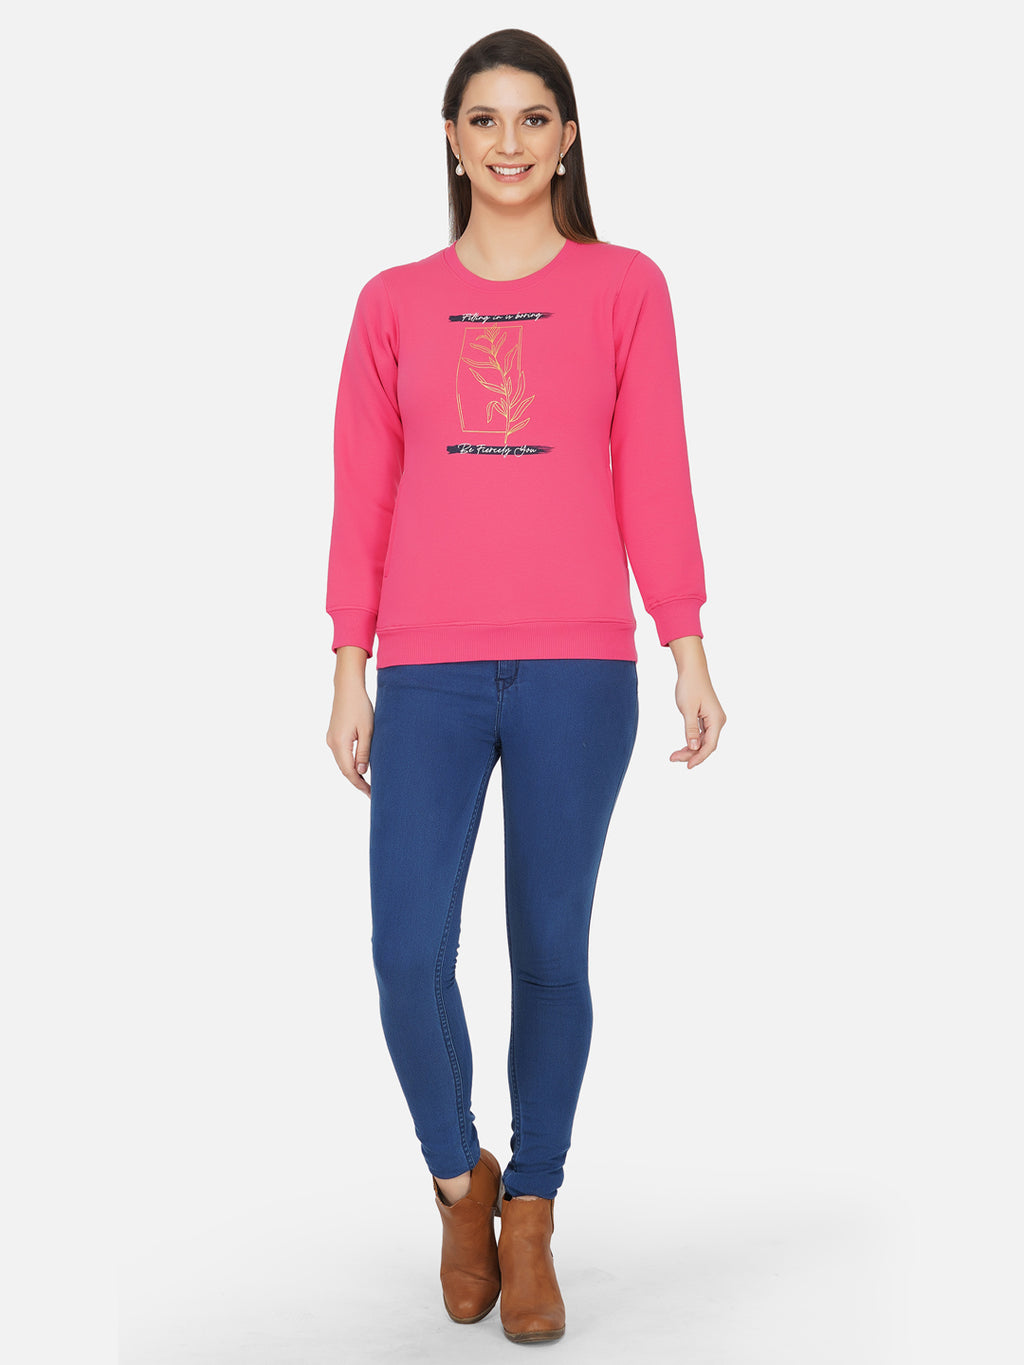 Fabnest winter pink printed fleece sweatshirt-Sweatshirt-Fabnest